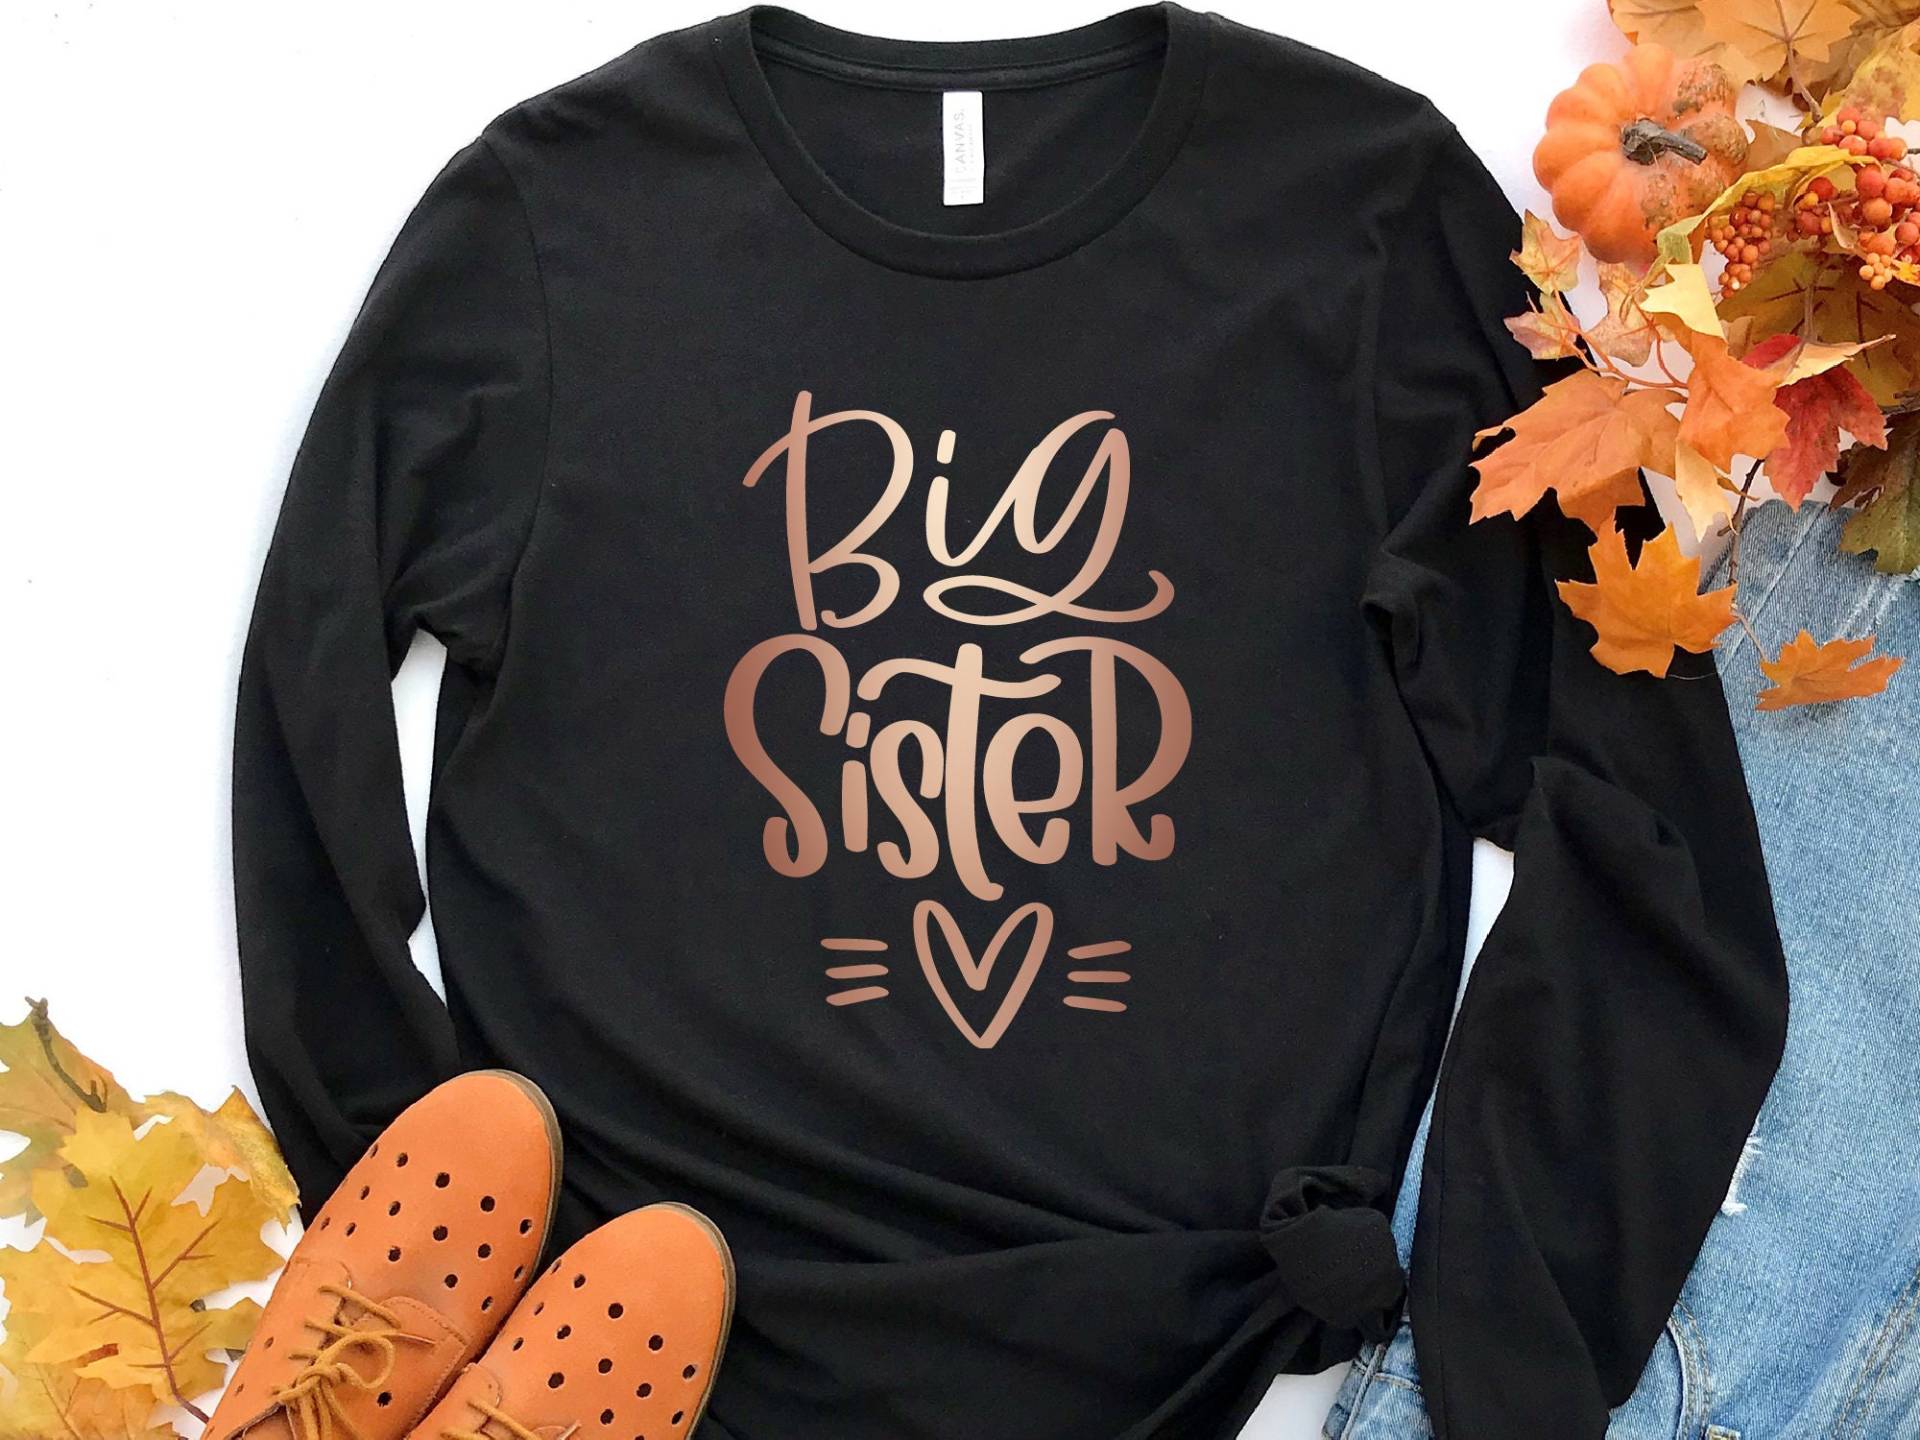 Big Schwester Langarm Shirt, Ankündigung, Offenbaren, Gefördert Zu Sis, Shirt von craftgatedesign